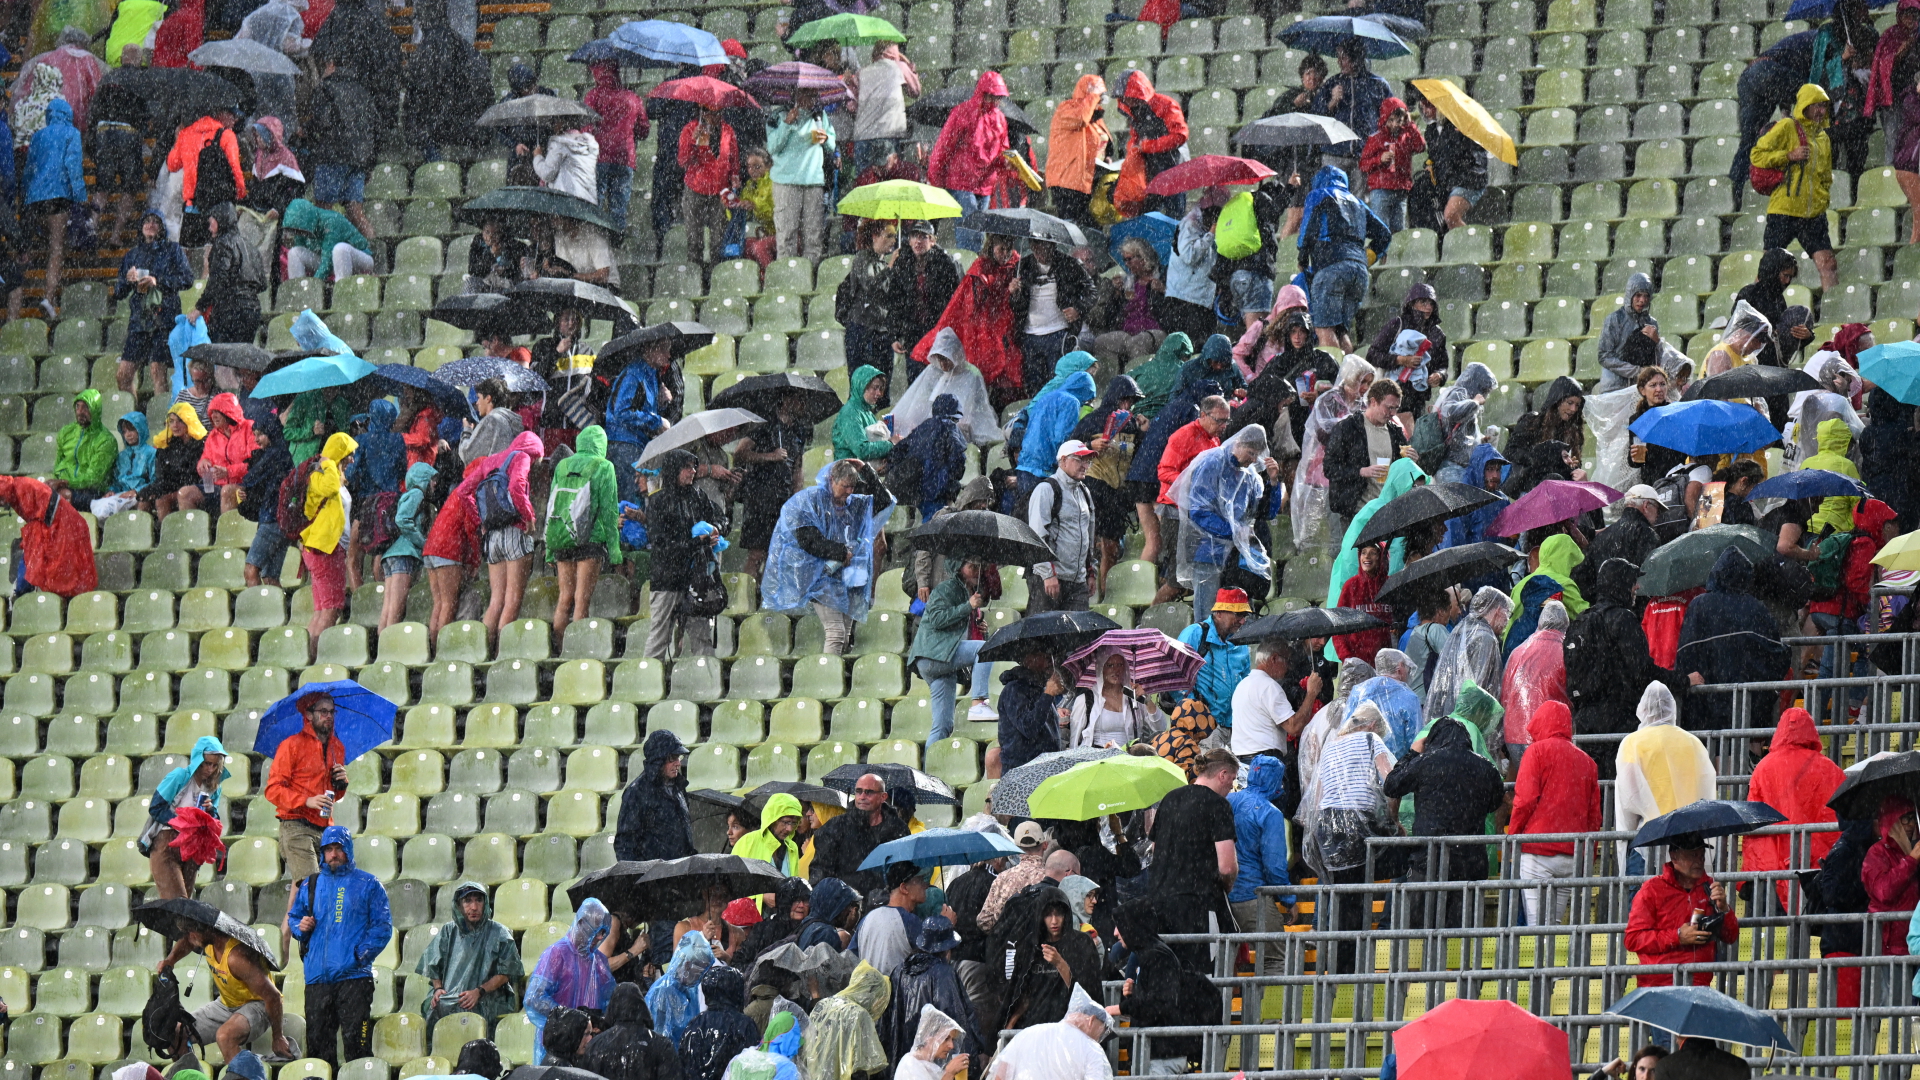 Zuschauer mit Regenschirmen verlassen die Plätze. Wegen einer Unwetterwarnung wurden die Wettkämpfe der Leichtathletik-EM in München unterbrochen. | dpa